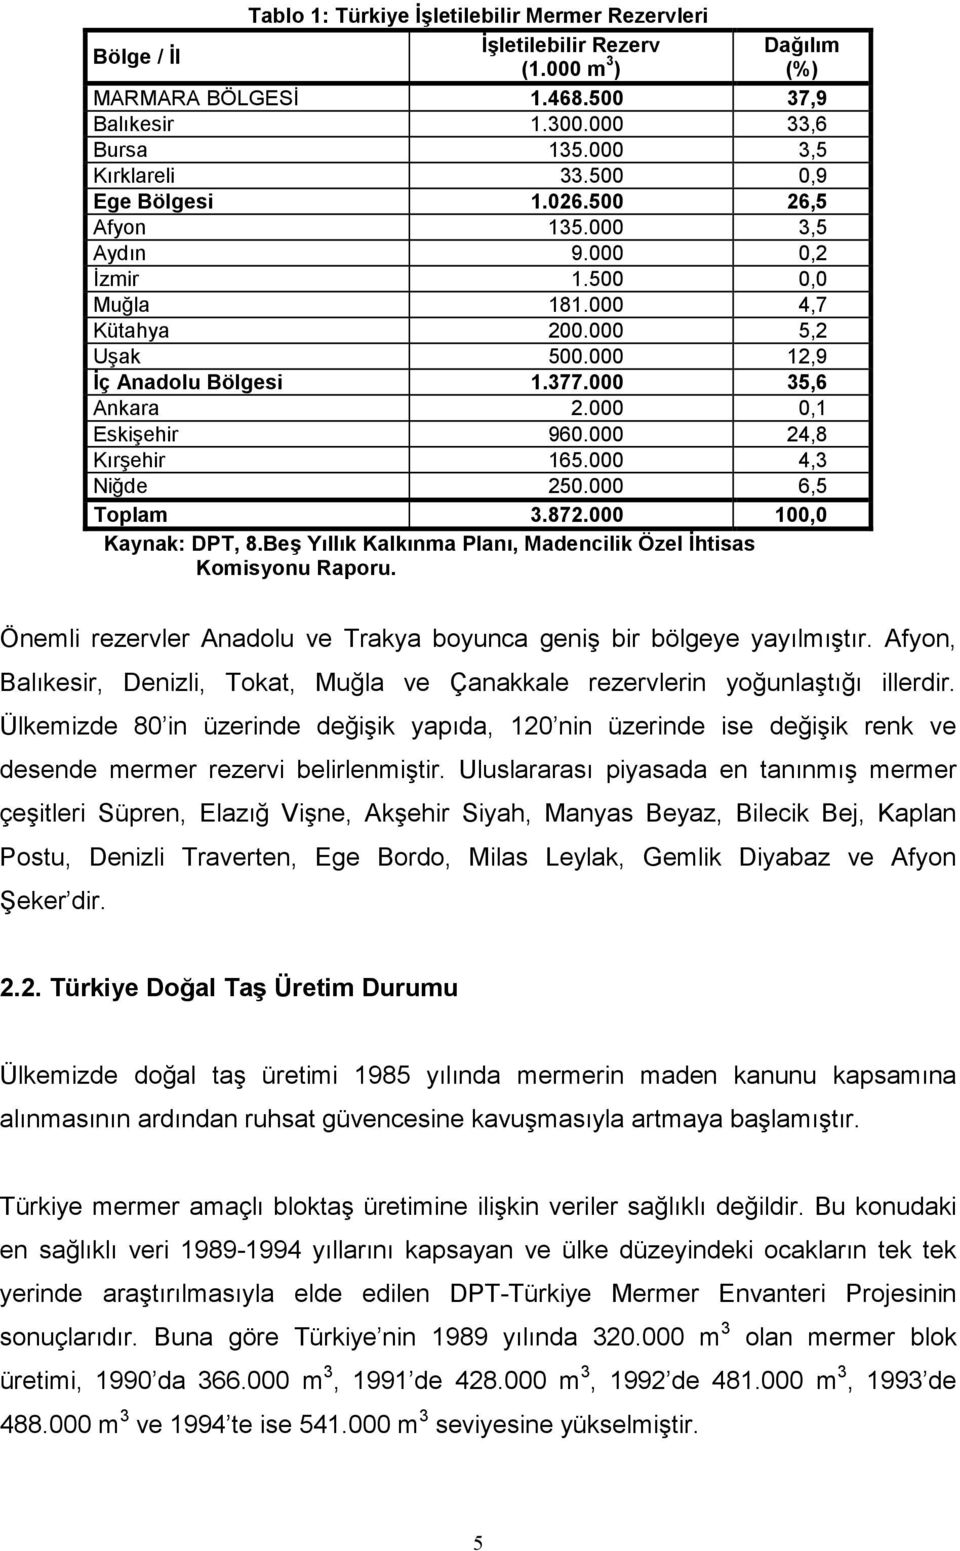 000 0,1 Eskişehir 960.000 24,8 Kırşehir 165.000 4,3 Niğde 250.000 6,5 Toplam 3.872.000 100,0 Kaynak: DPT, 8.Beş Yıllık Kalkınma Planı, Madencilik Özel İhtisas Komisyonu Raporu.